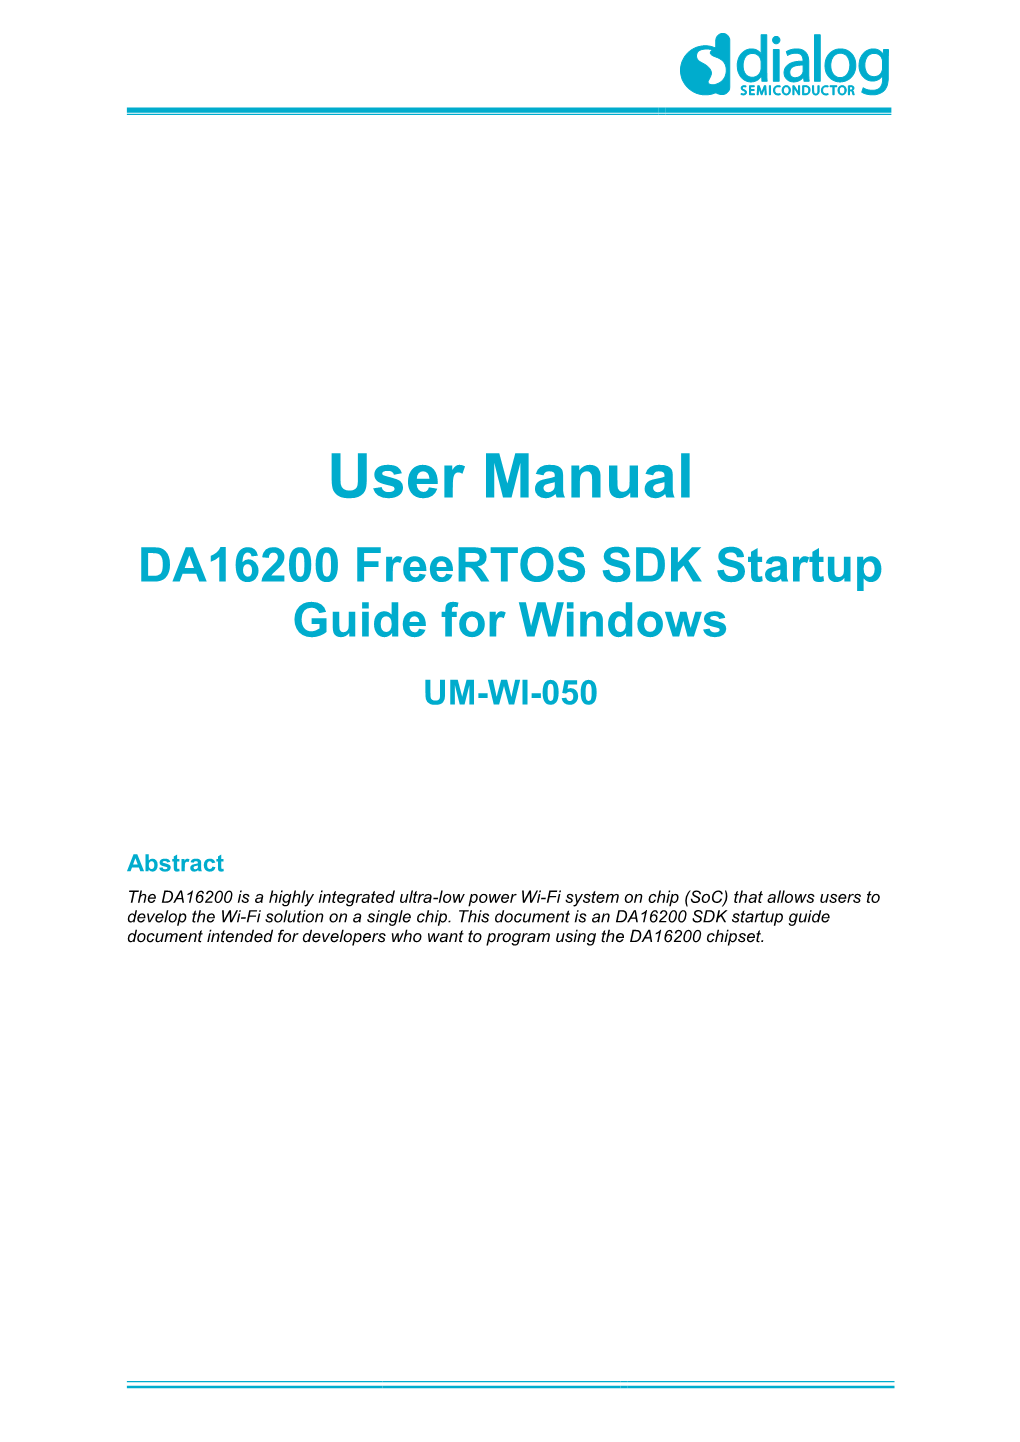 DA16200 Freertos SDK Startup Guide for Windows UM-WI-050